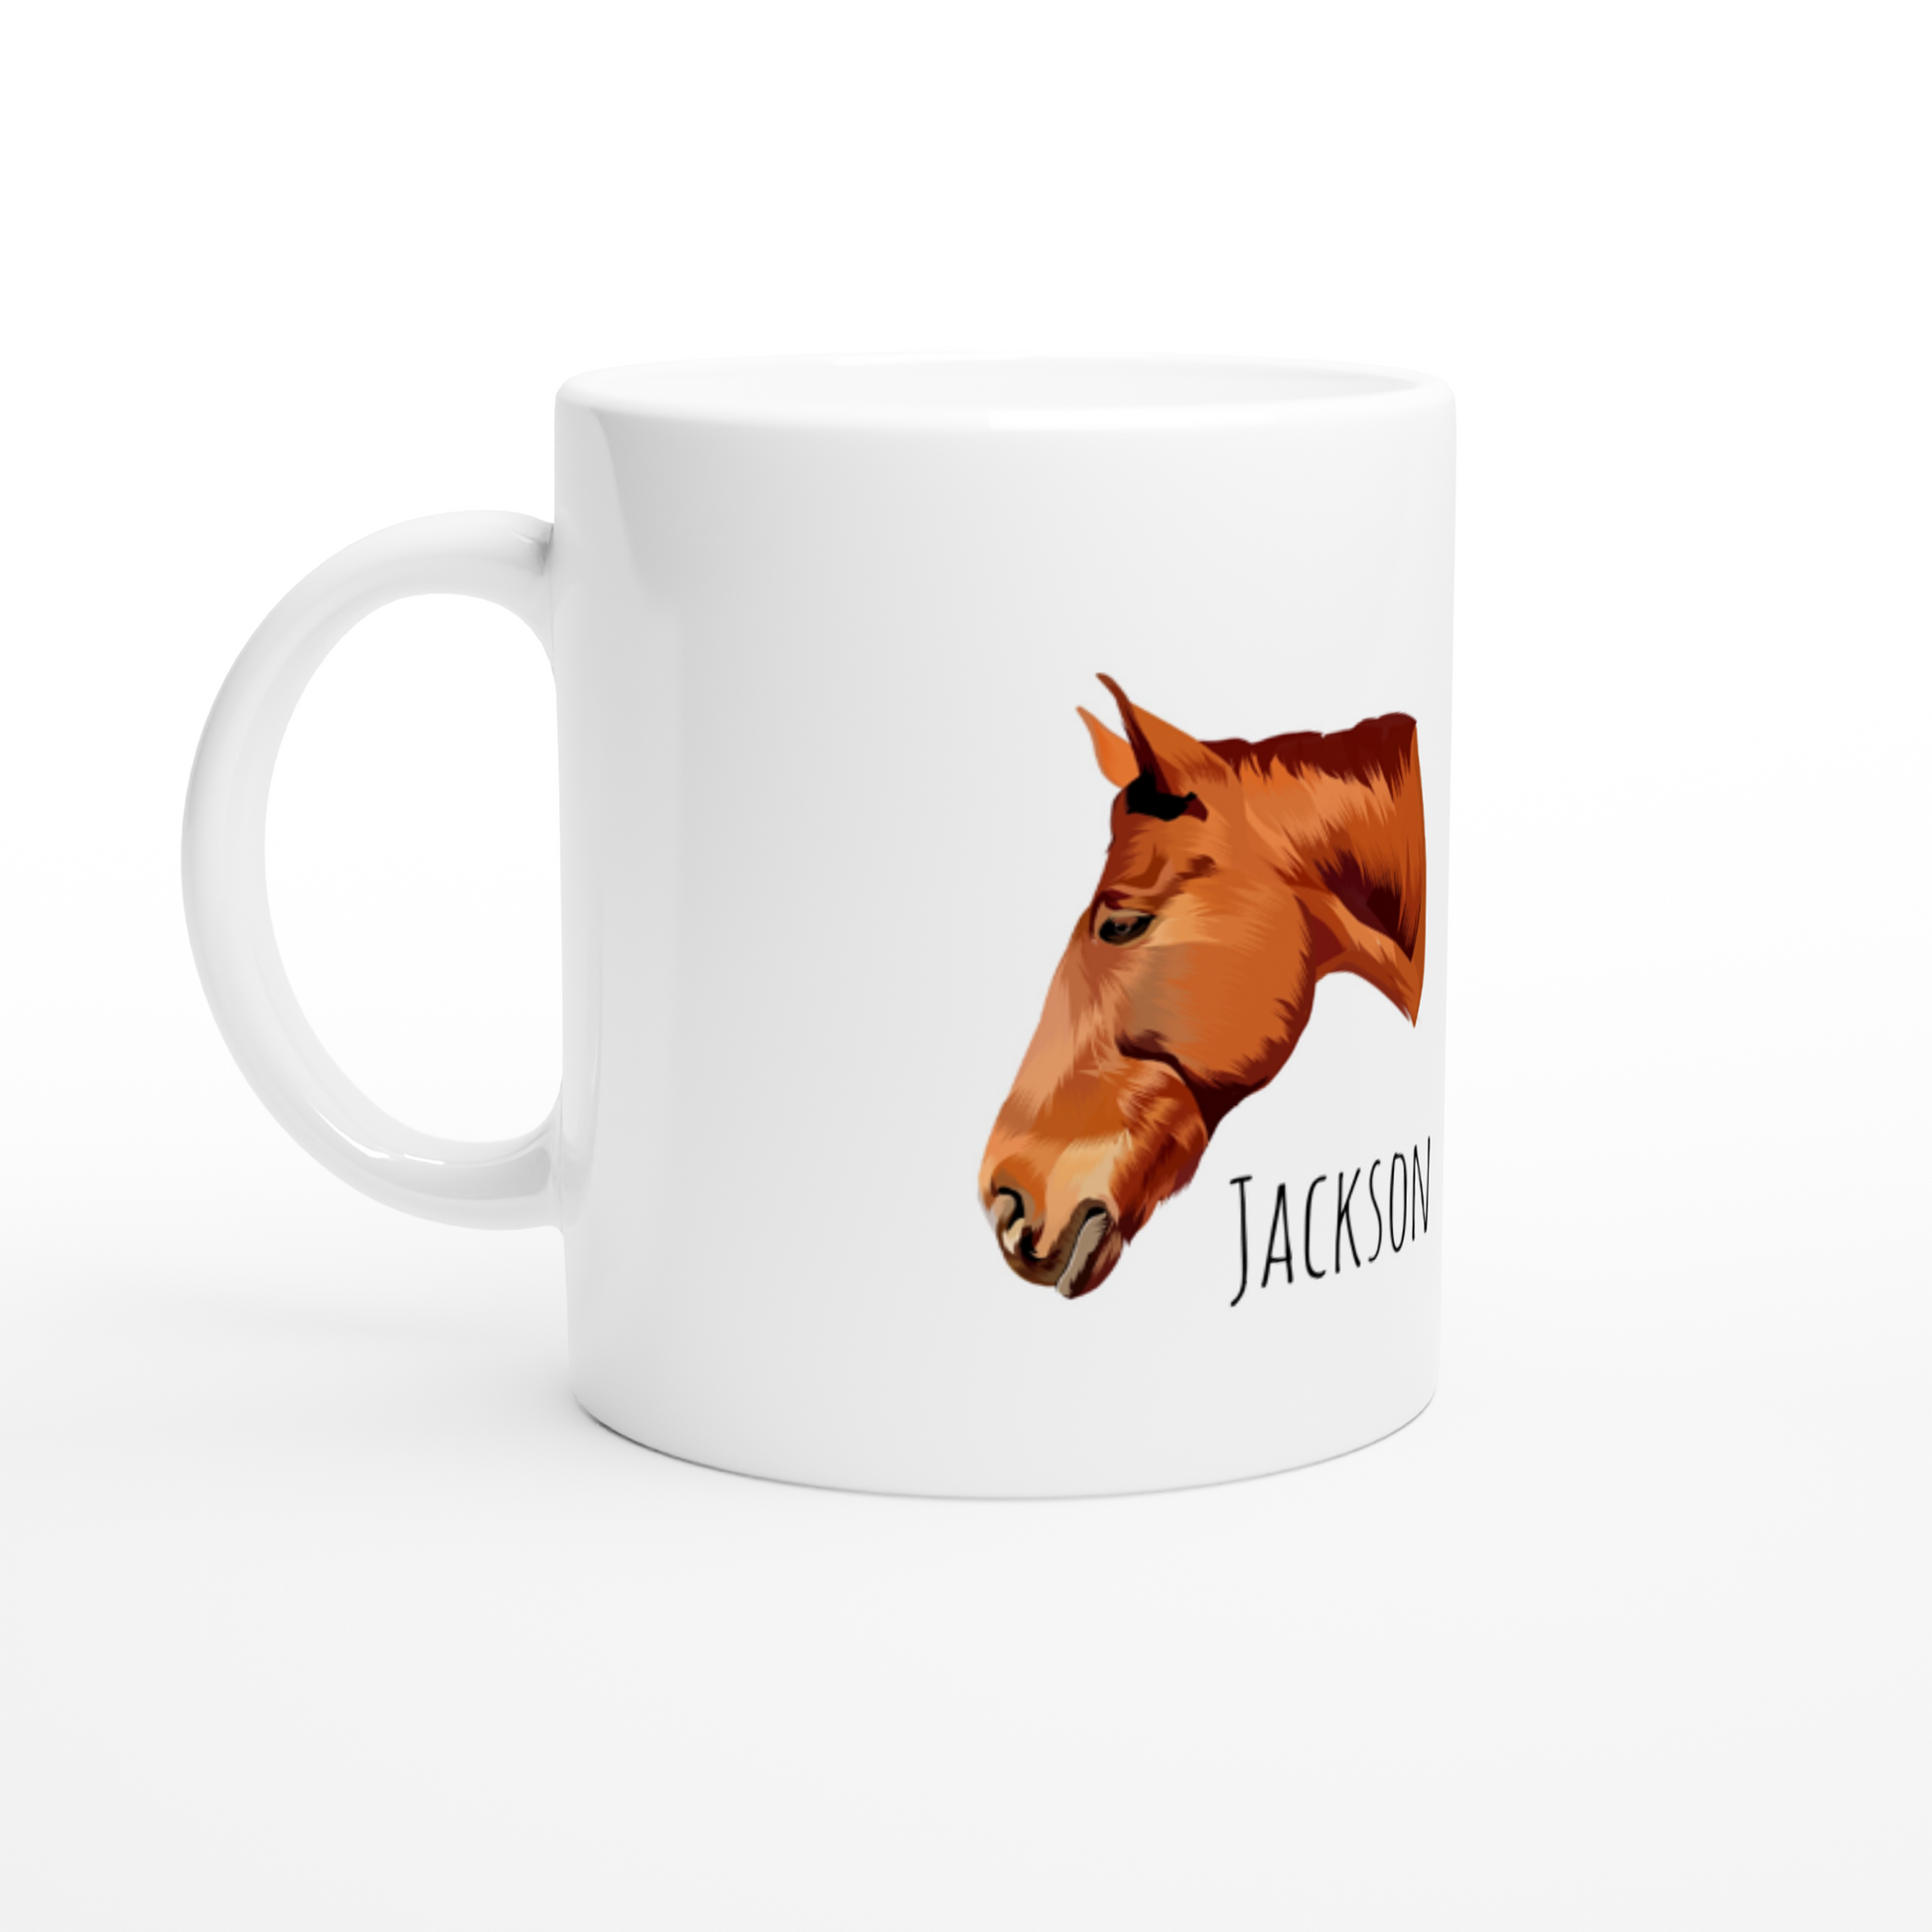 Hand Drawn Horse || 11oz Ceramic Mug - TruPaint - Personalized; Hand drawn & personalized with your horse